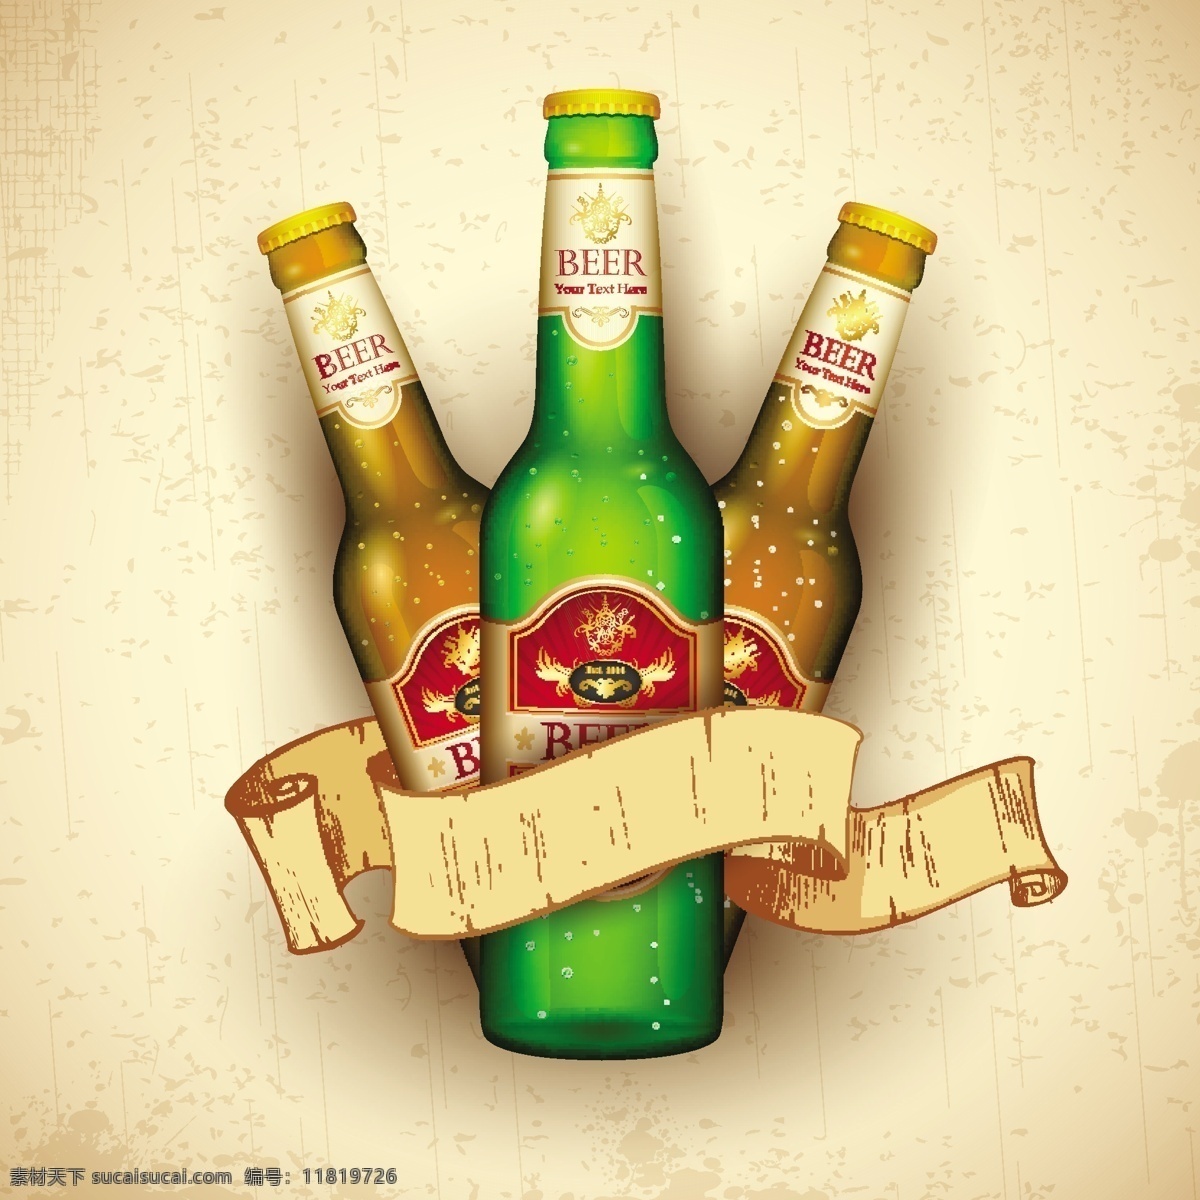 啤酒 beer 酒水 手绘 啤酒节 德国啤酒 啤酒广告 啤酒海报 饮料酒水 餐饮美食 生活百科